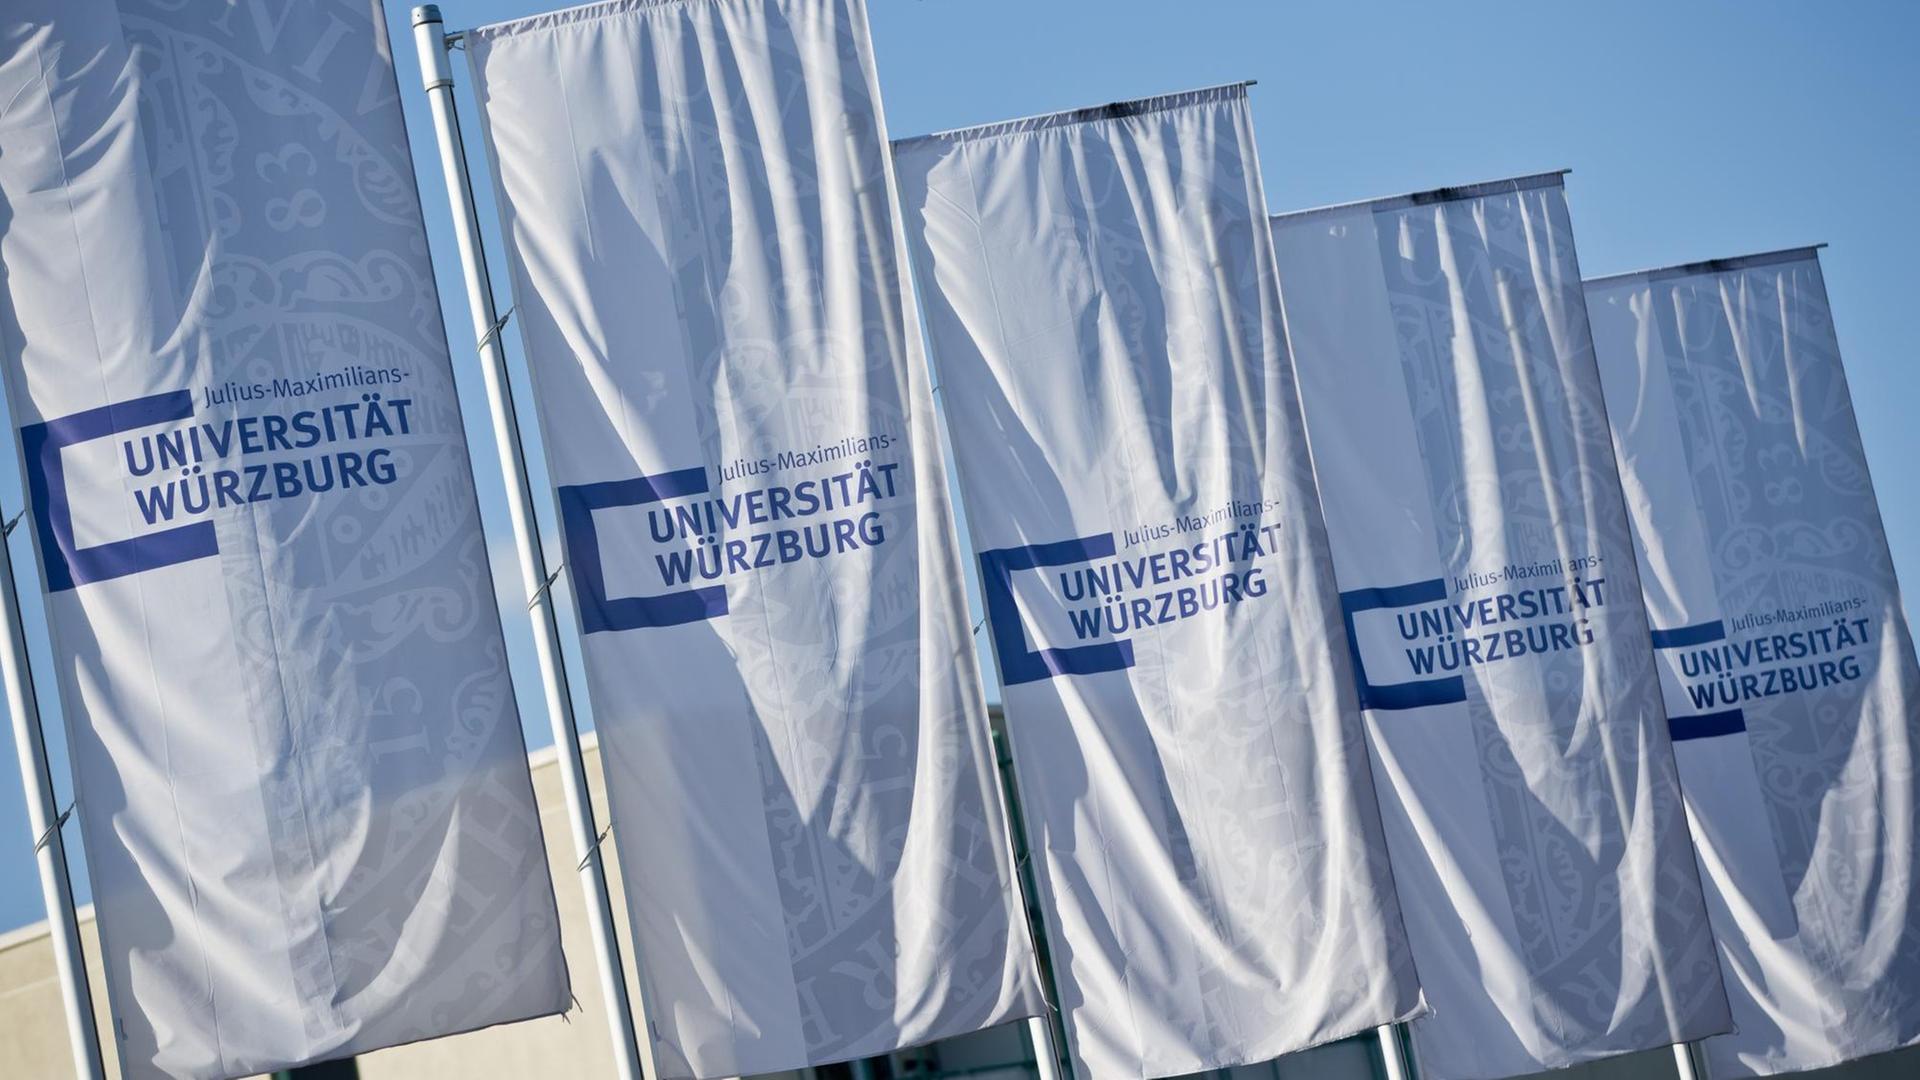 Flaggen mit dem Schriftzug "Universität Würzburg" wehen im Wind.